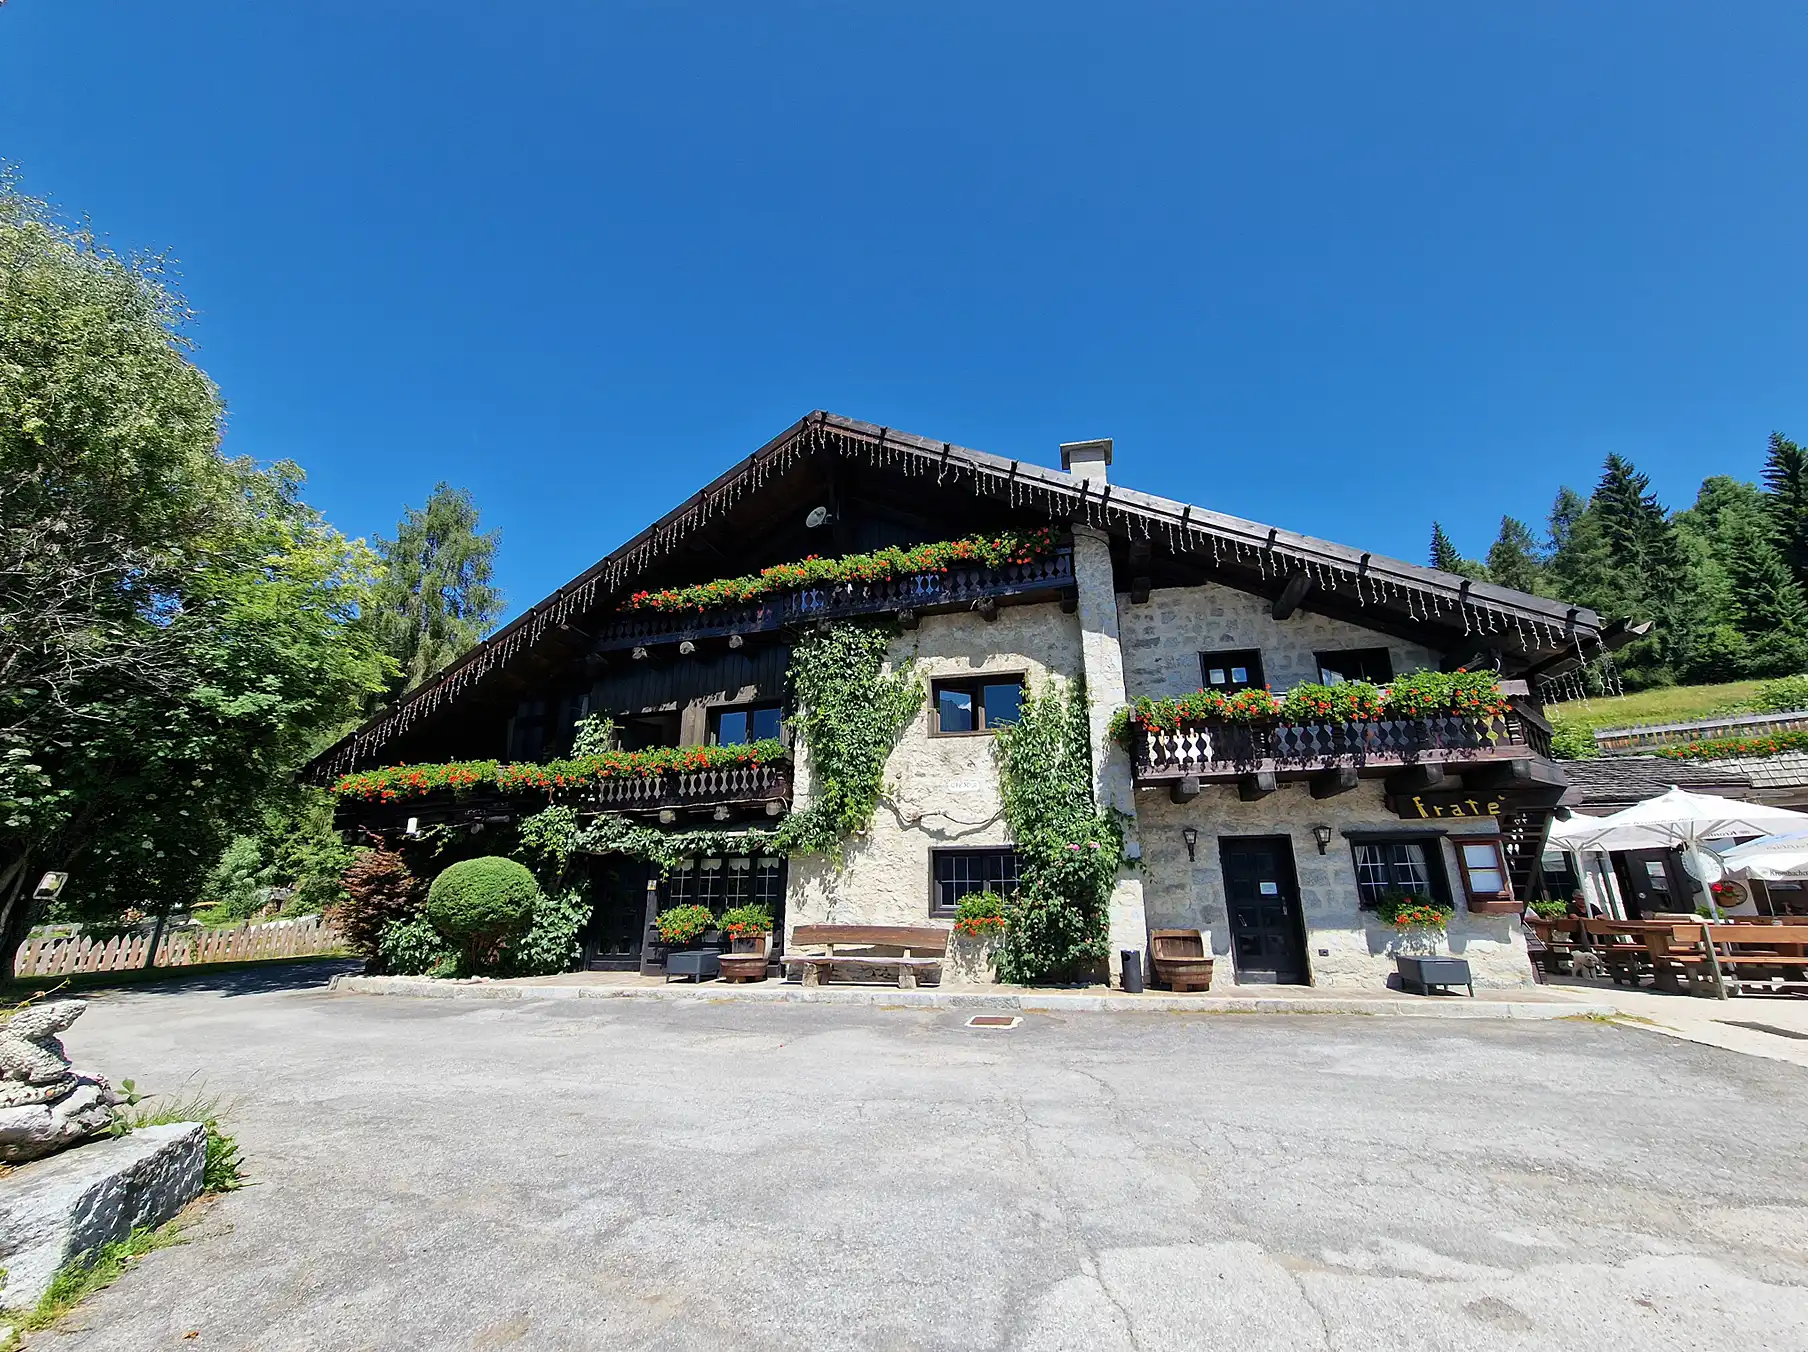 Vacanze in Montagna Trentino- Fratè Hotel Ristorante